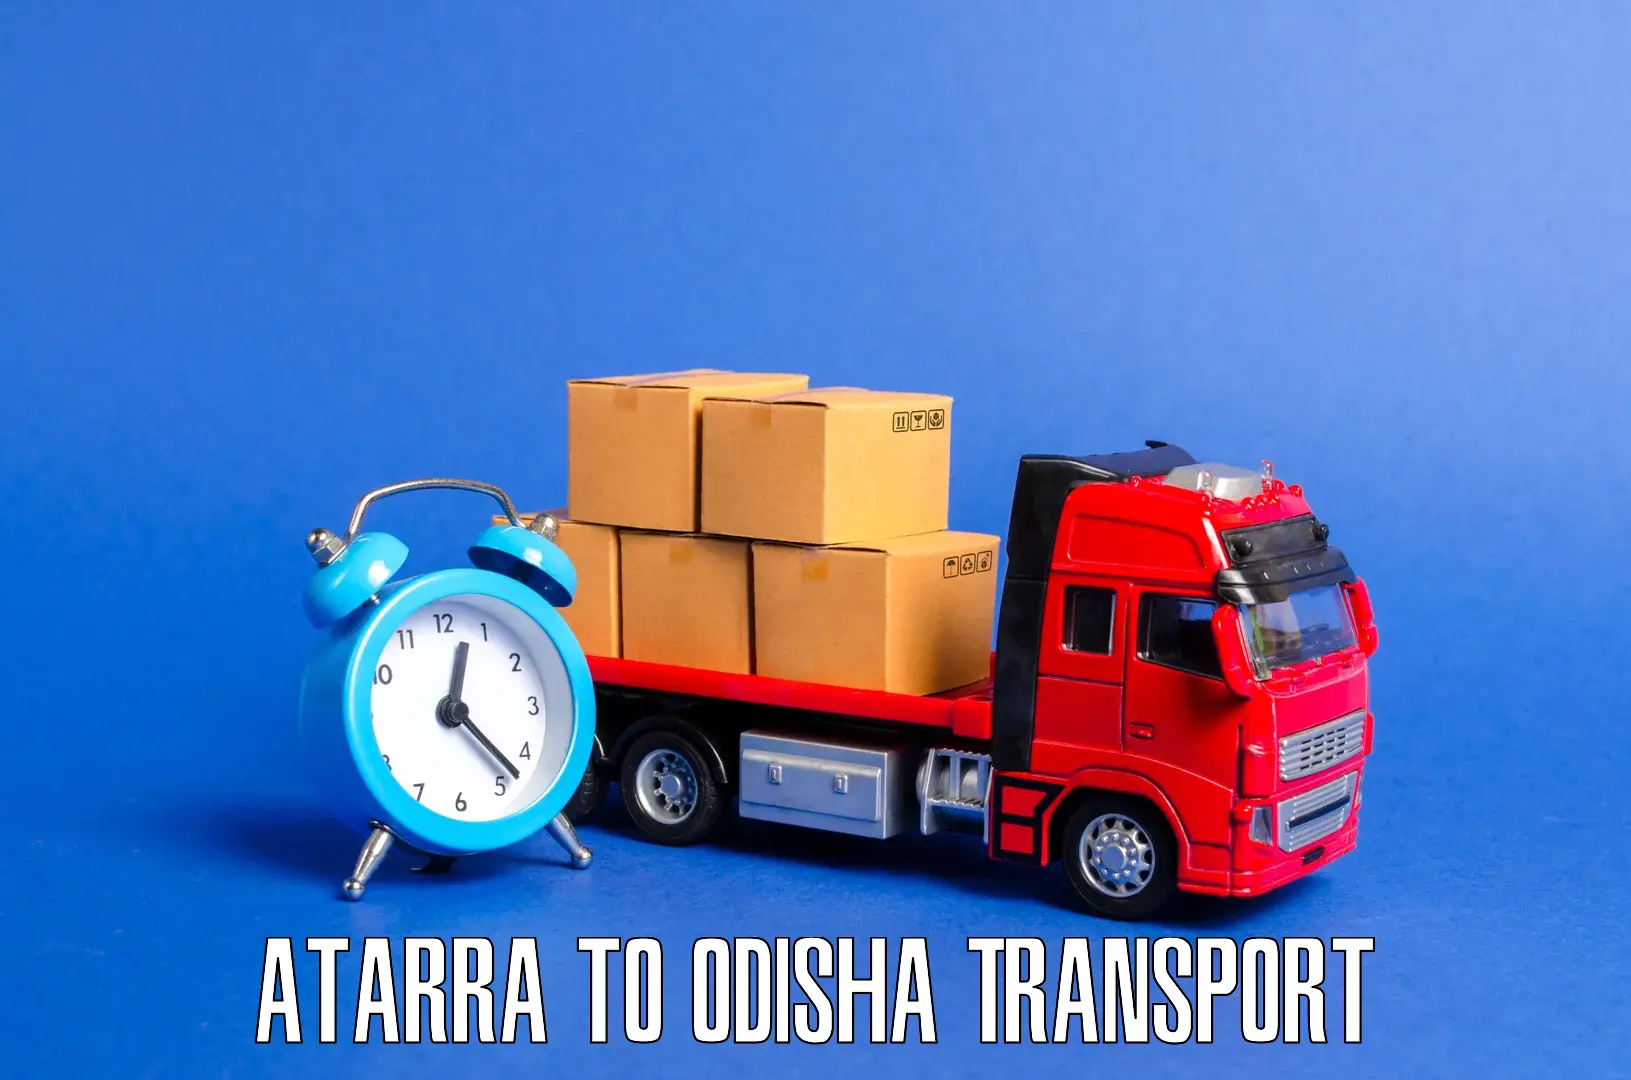 Nearby transport service Atarra to Khariaguda